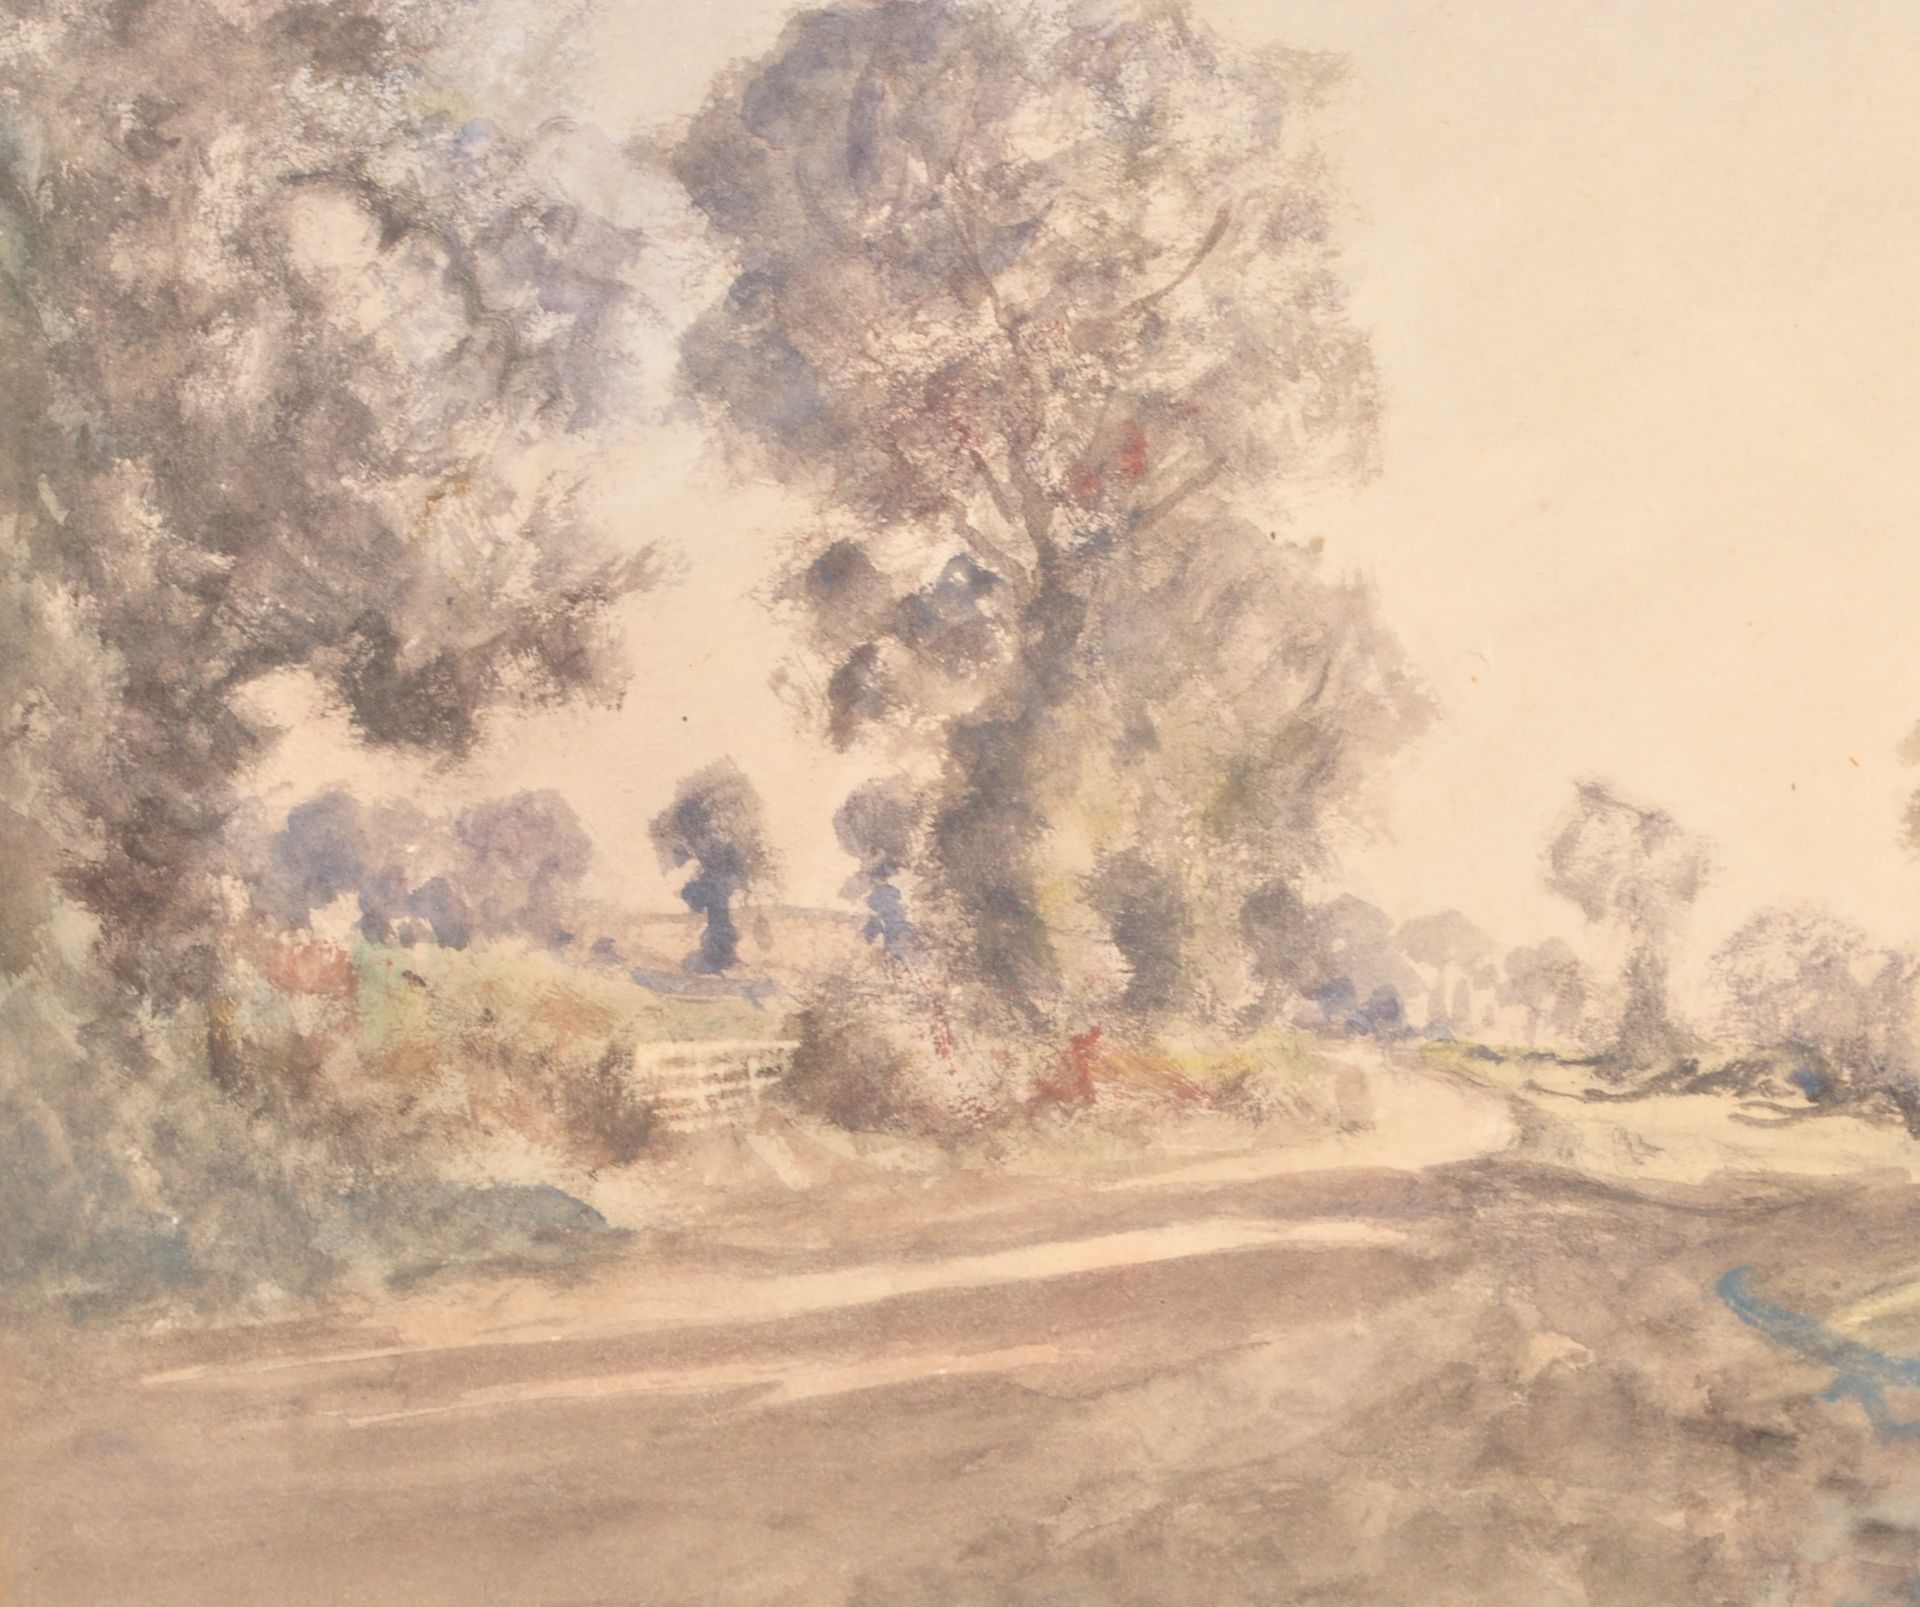 ERNEST PILE BUCKNALL (1861-1935) - ROAD TO HENBURY BRISTOL - Bild 3 aus 8